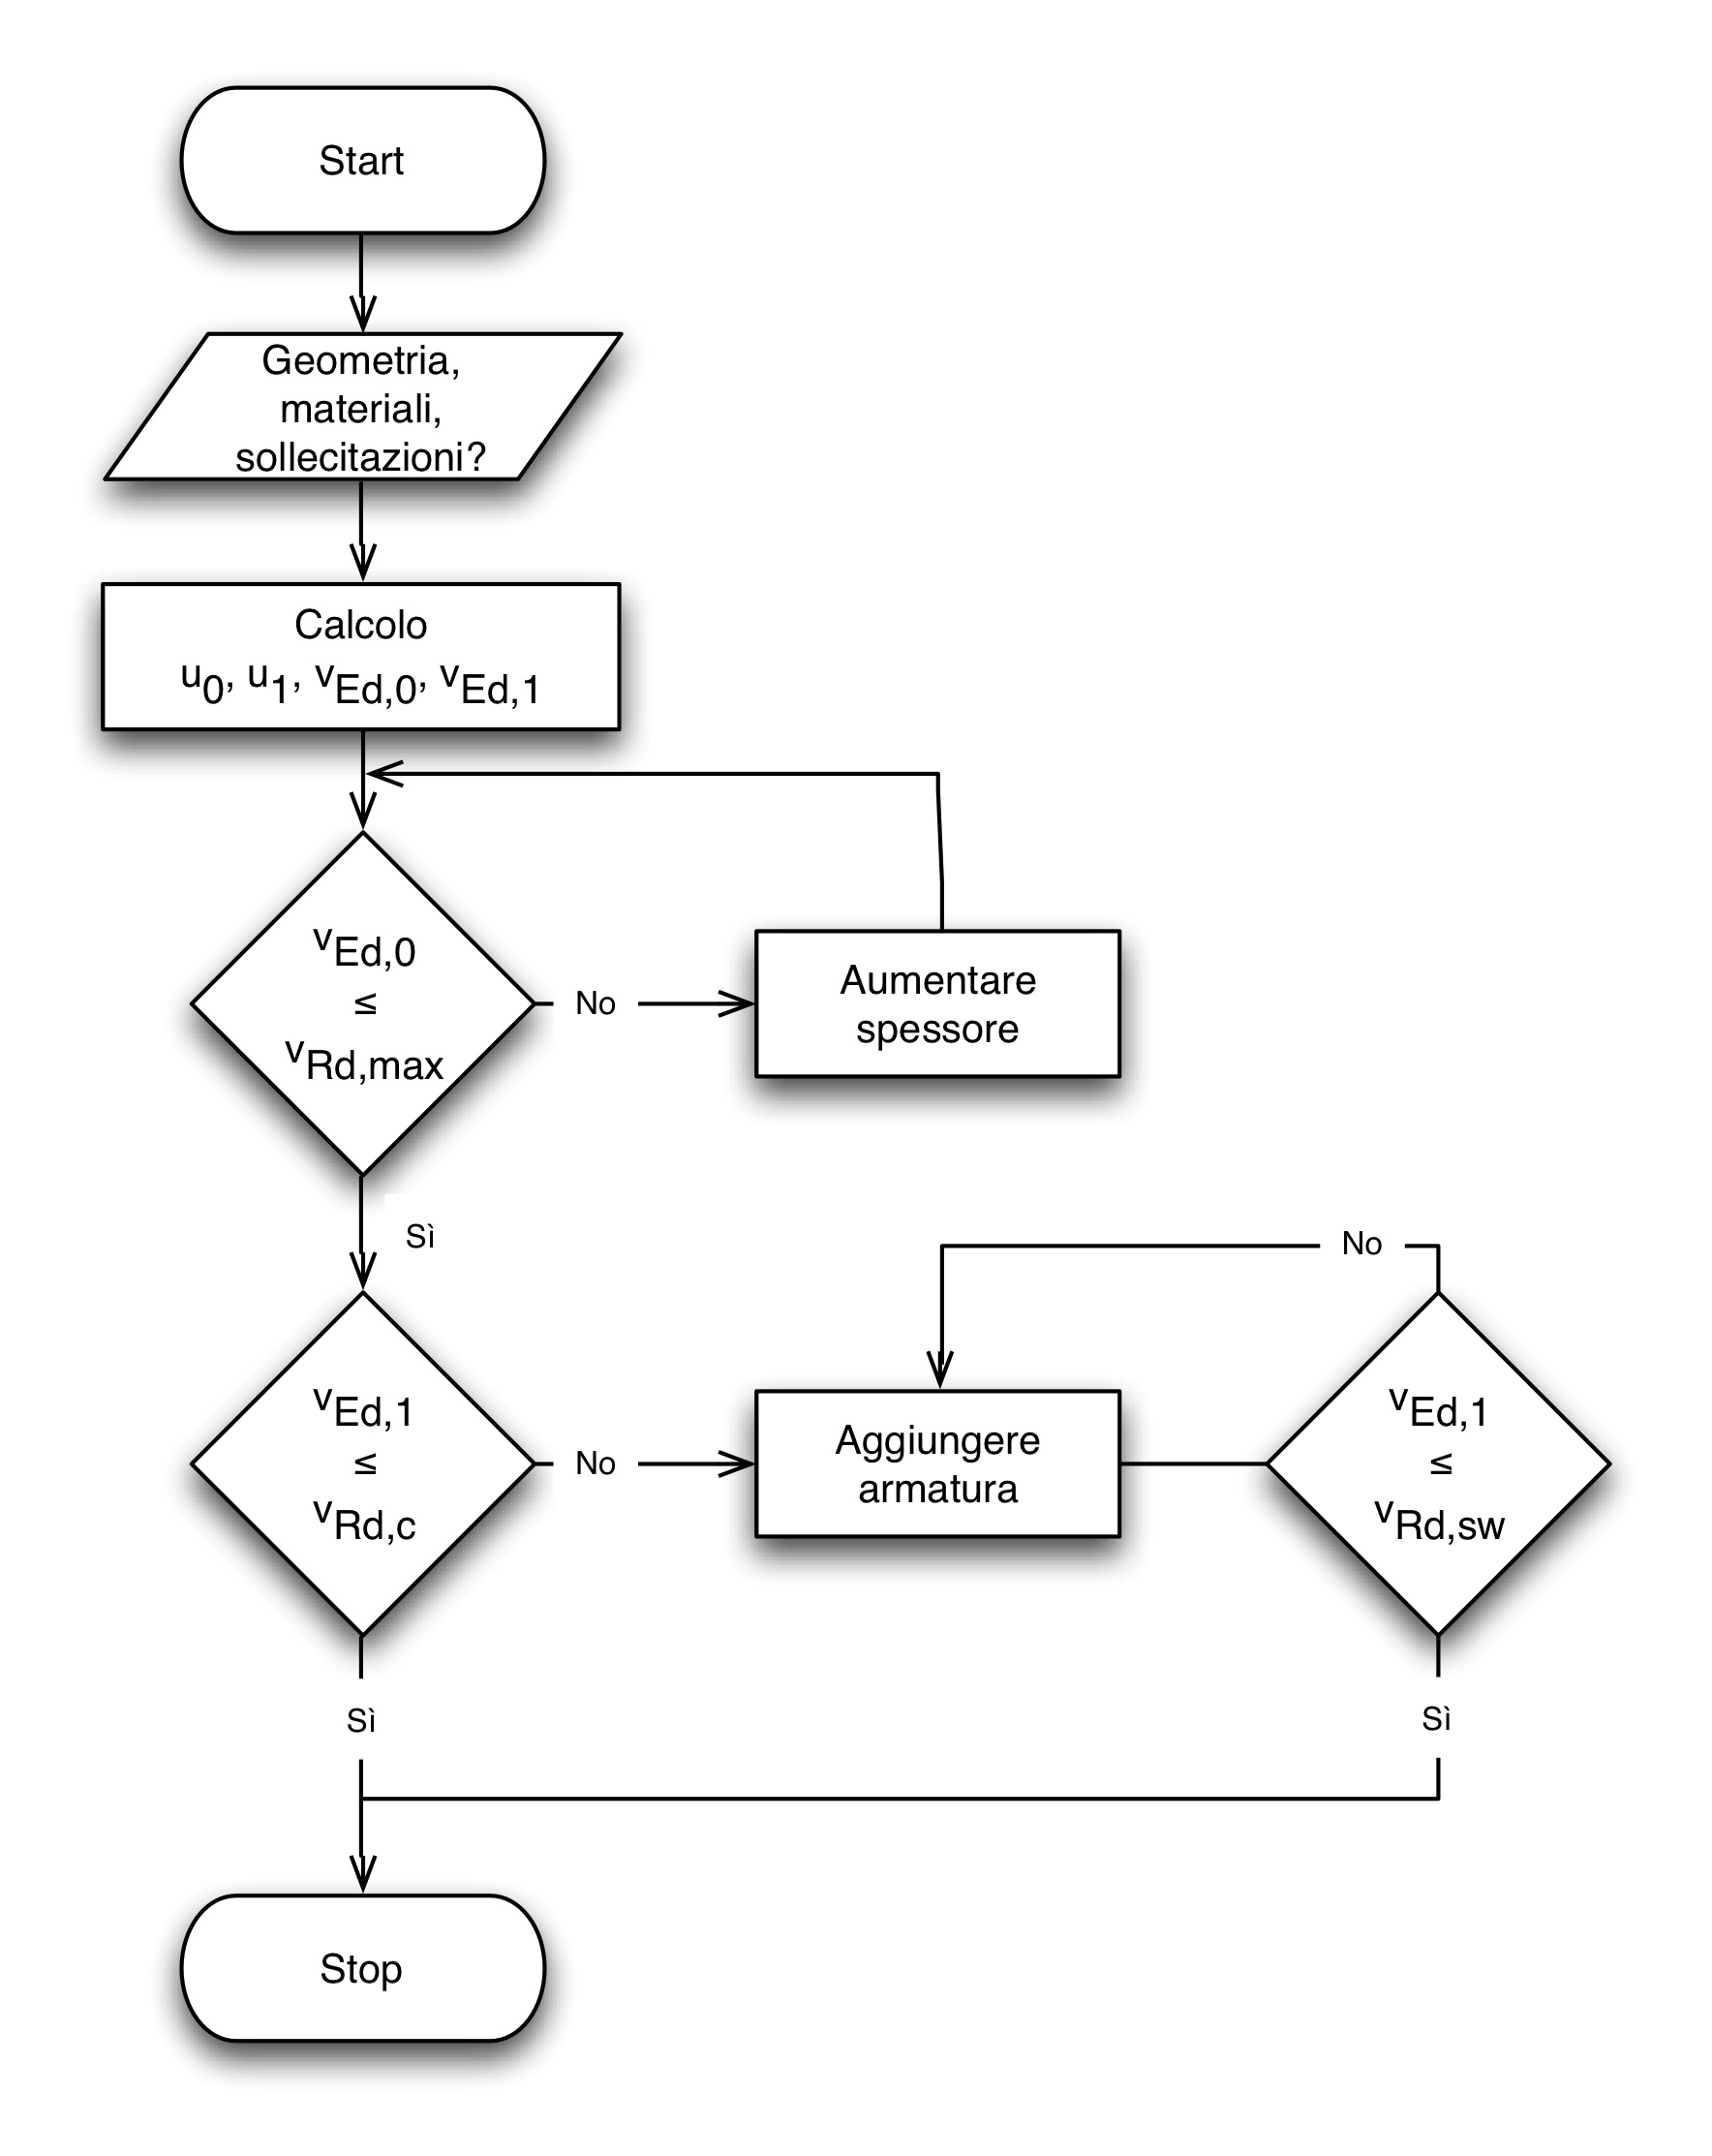 Diagramma di flusso per la procedura di verifica